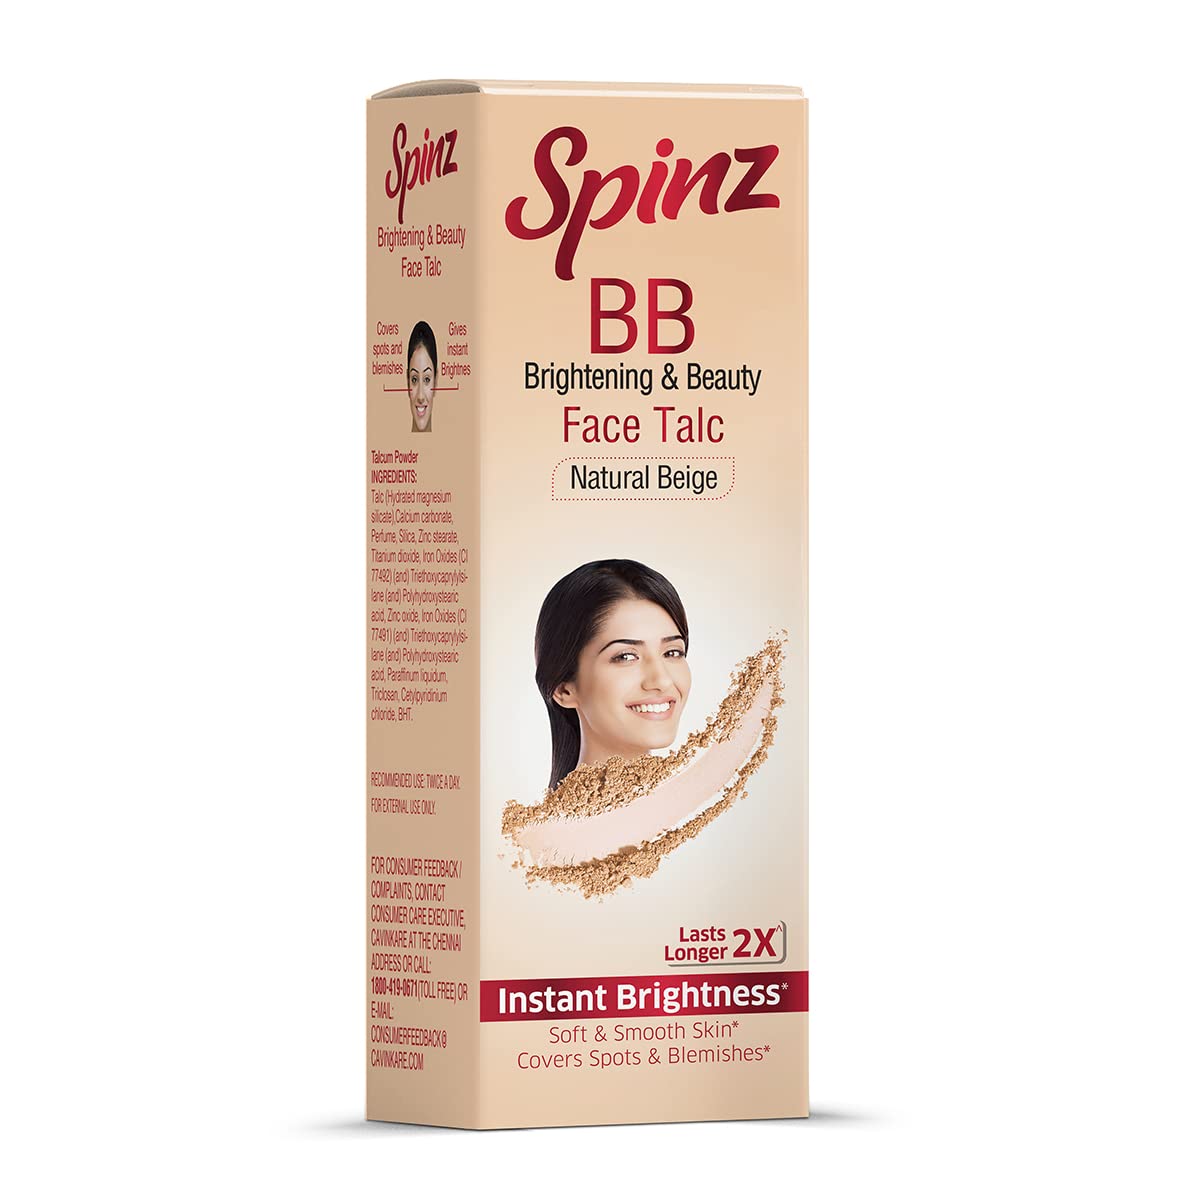 Spinz BB Brightening & Beauty Face Talc Natural Beige -35gm